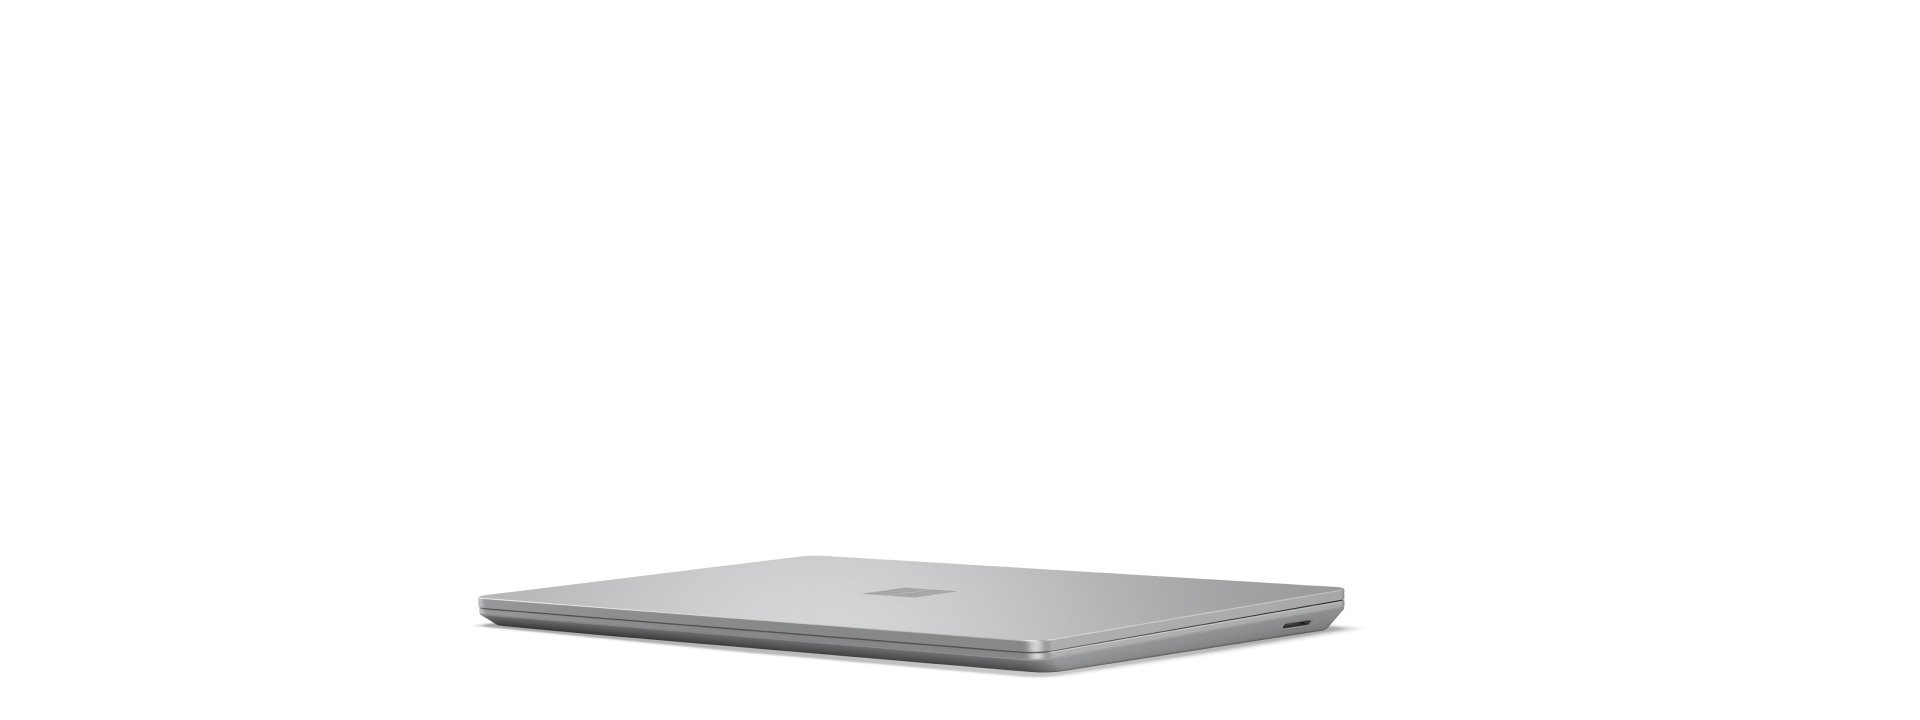 Image de départ de l’animation rotative du Surface Laptop Go 3 s’ouvrant et se fermant tout en montrant l’appareil sous tous les angles.